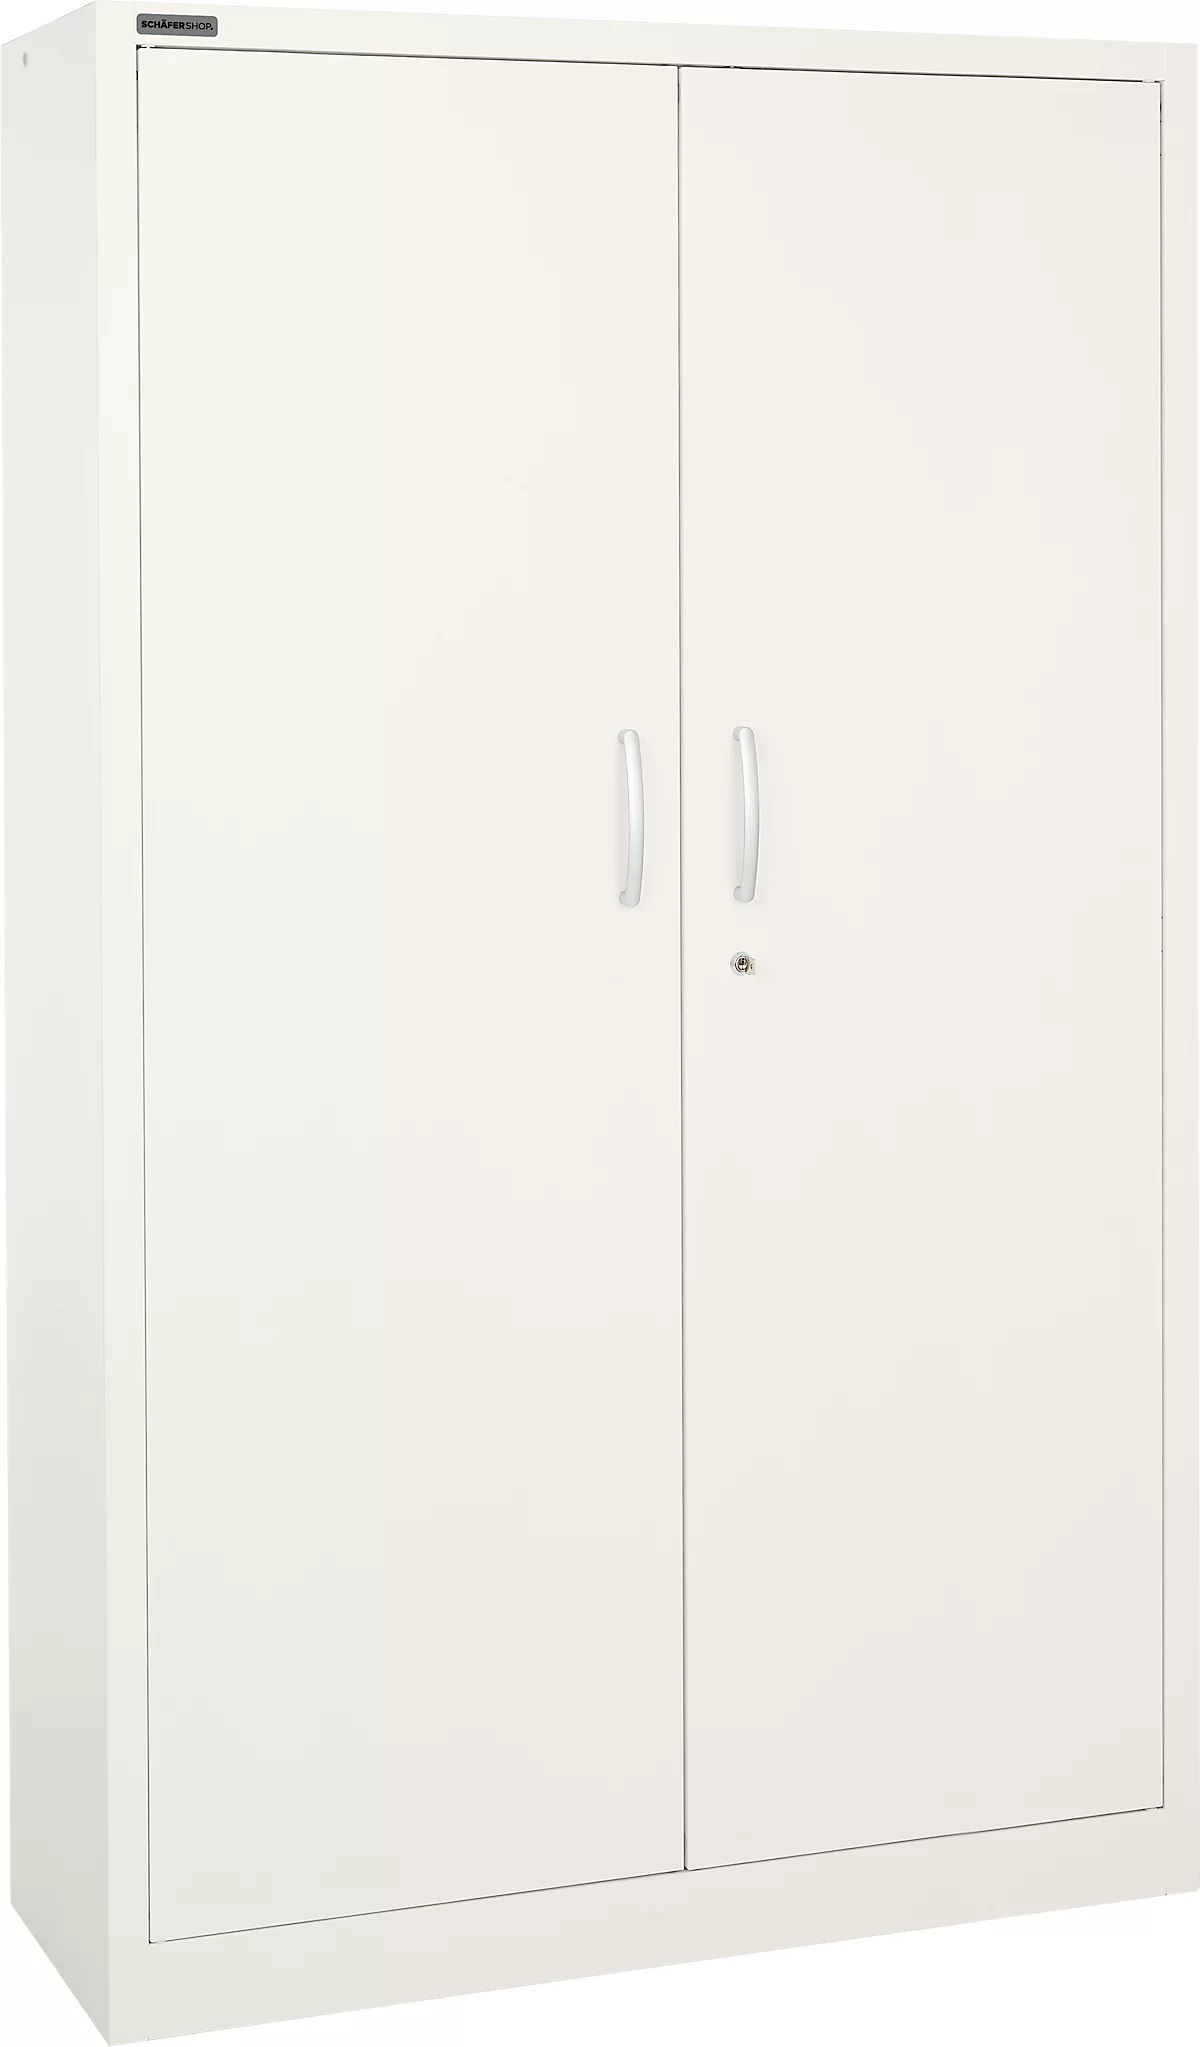 Schäfer Shop Select Armario de puertas batientes MS iCOLOUR, acero, 5 alturas de archivo, An 1200 mm, blanco RAL 9003